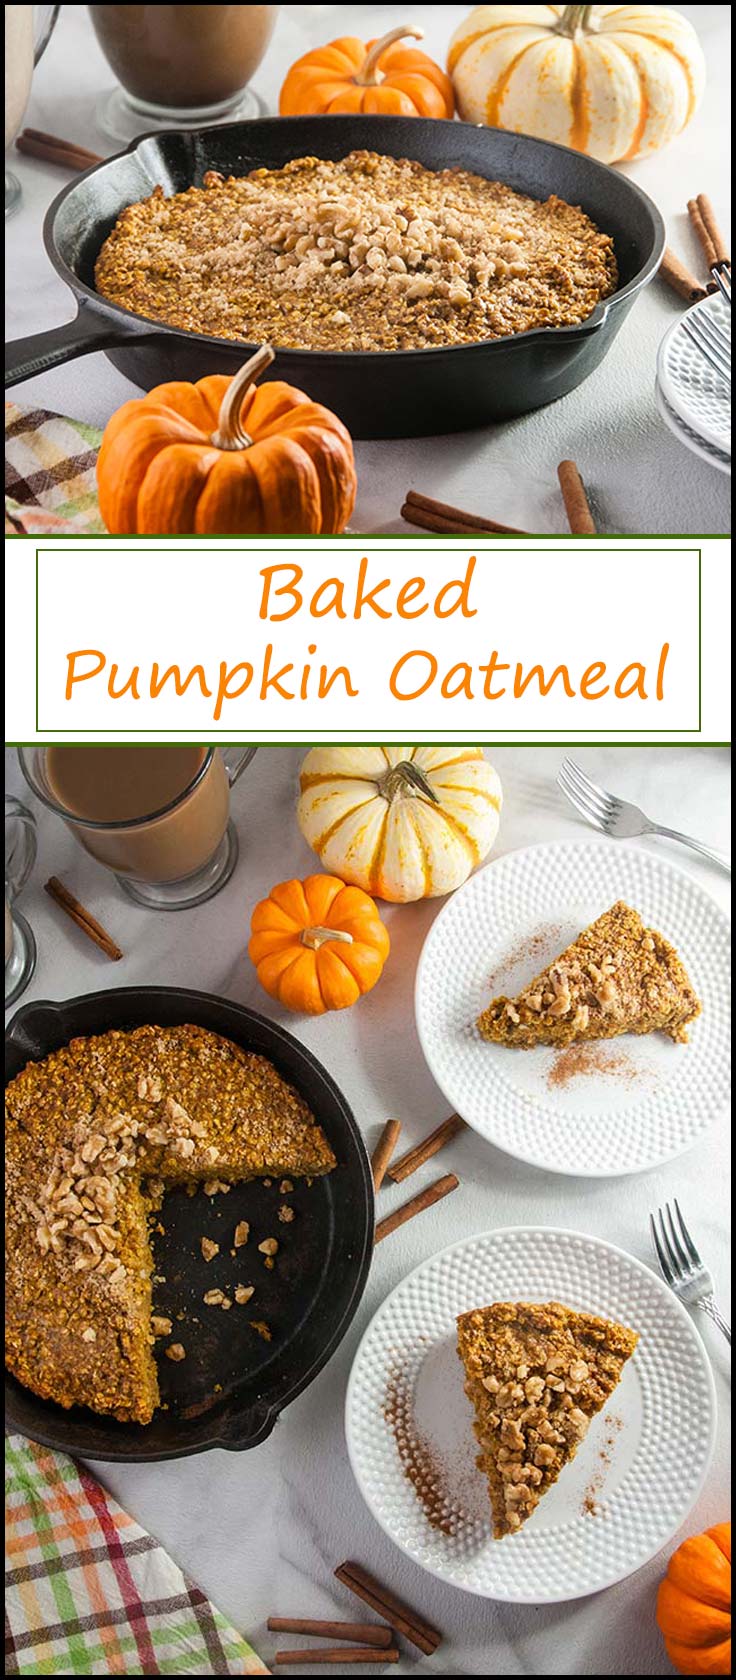 Easy Baked Pumpkin Oatmeal from www.seasonedsprinkles.com